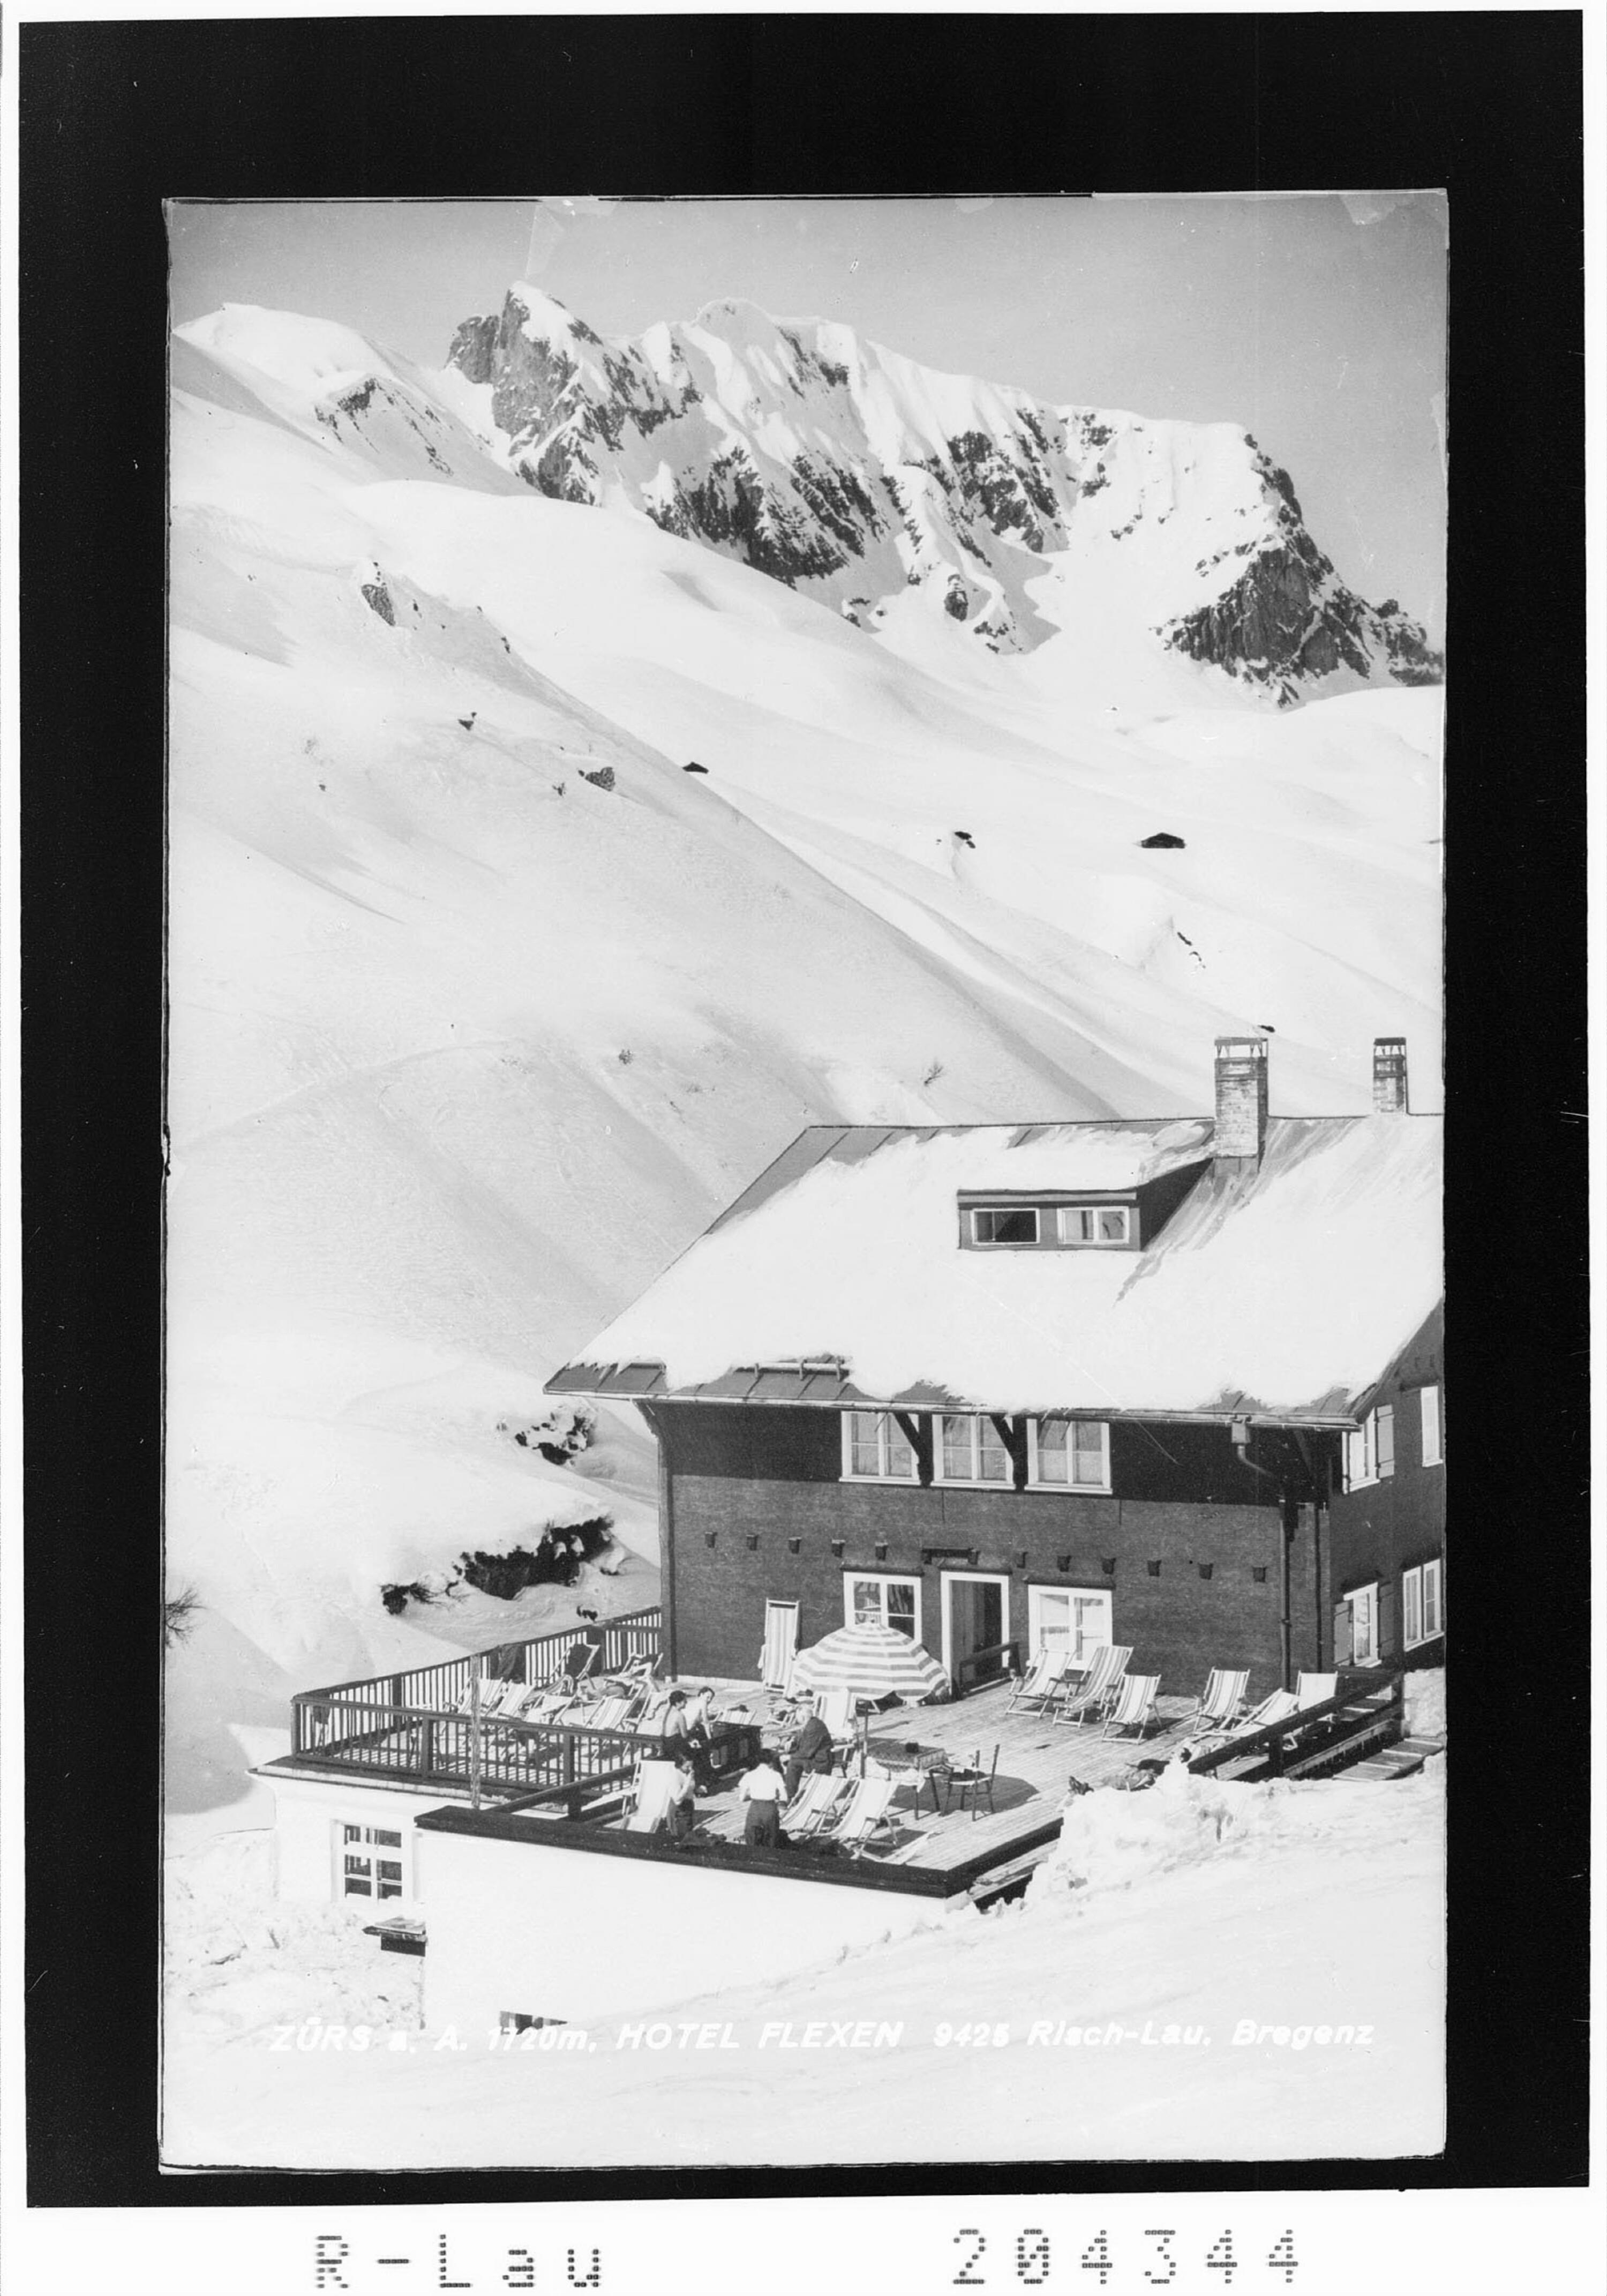 Zürs am Arlberg 1720 m / Hotel Flexen></div>


    <hr>
    <div class=